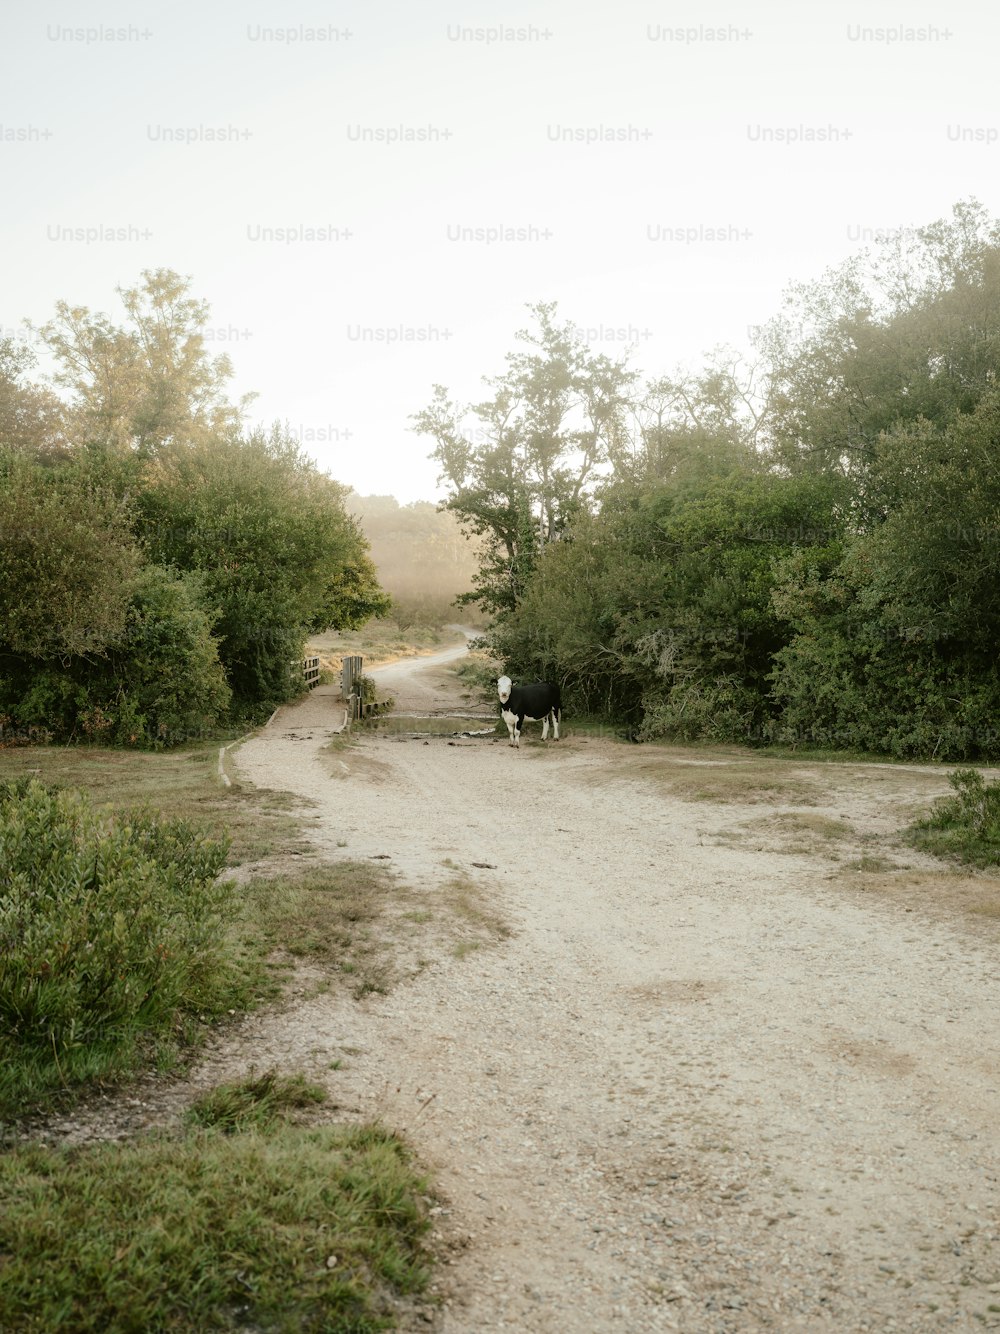 Un paio di mucche che camminano lungo una strada sterrata